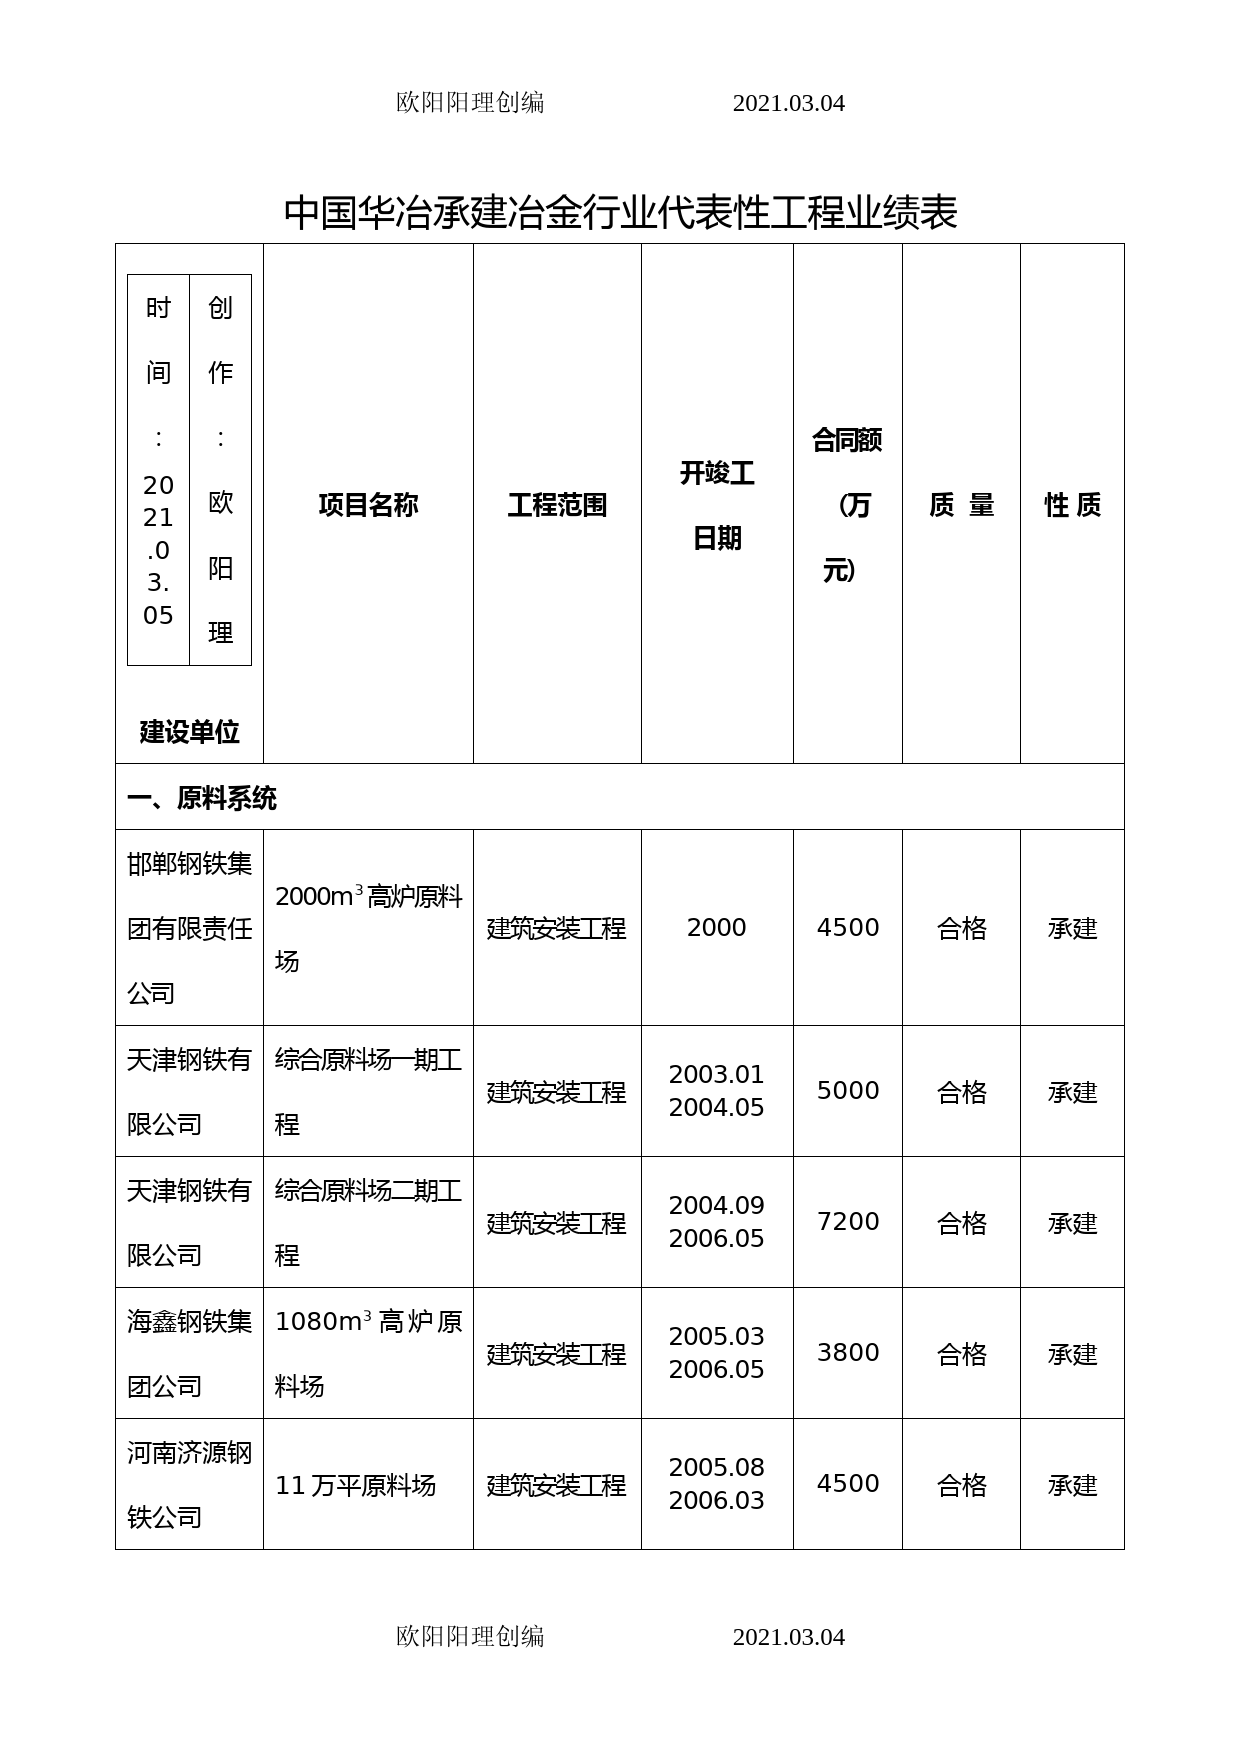 中国华冶承建冶金行业代表性工程业绩表(.5)之欧阳理创编